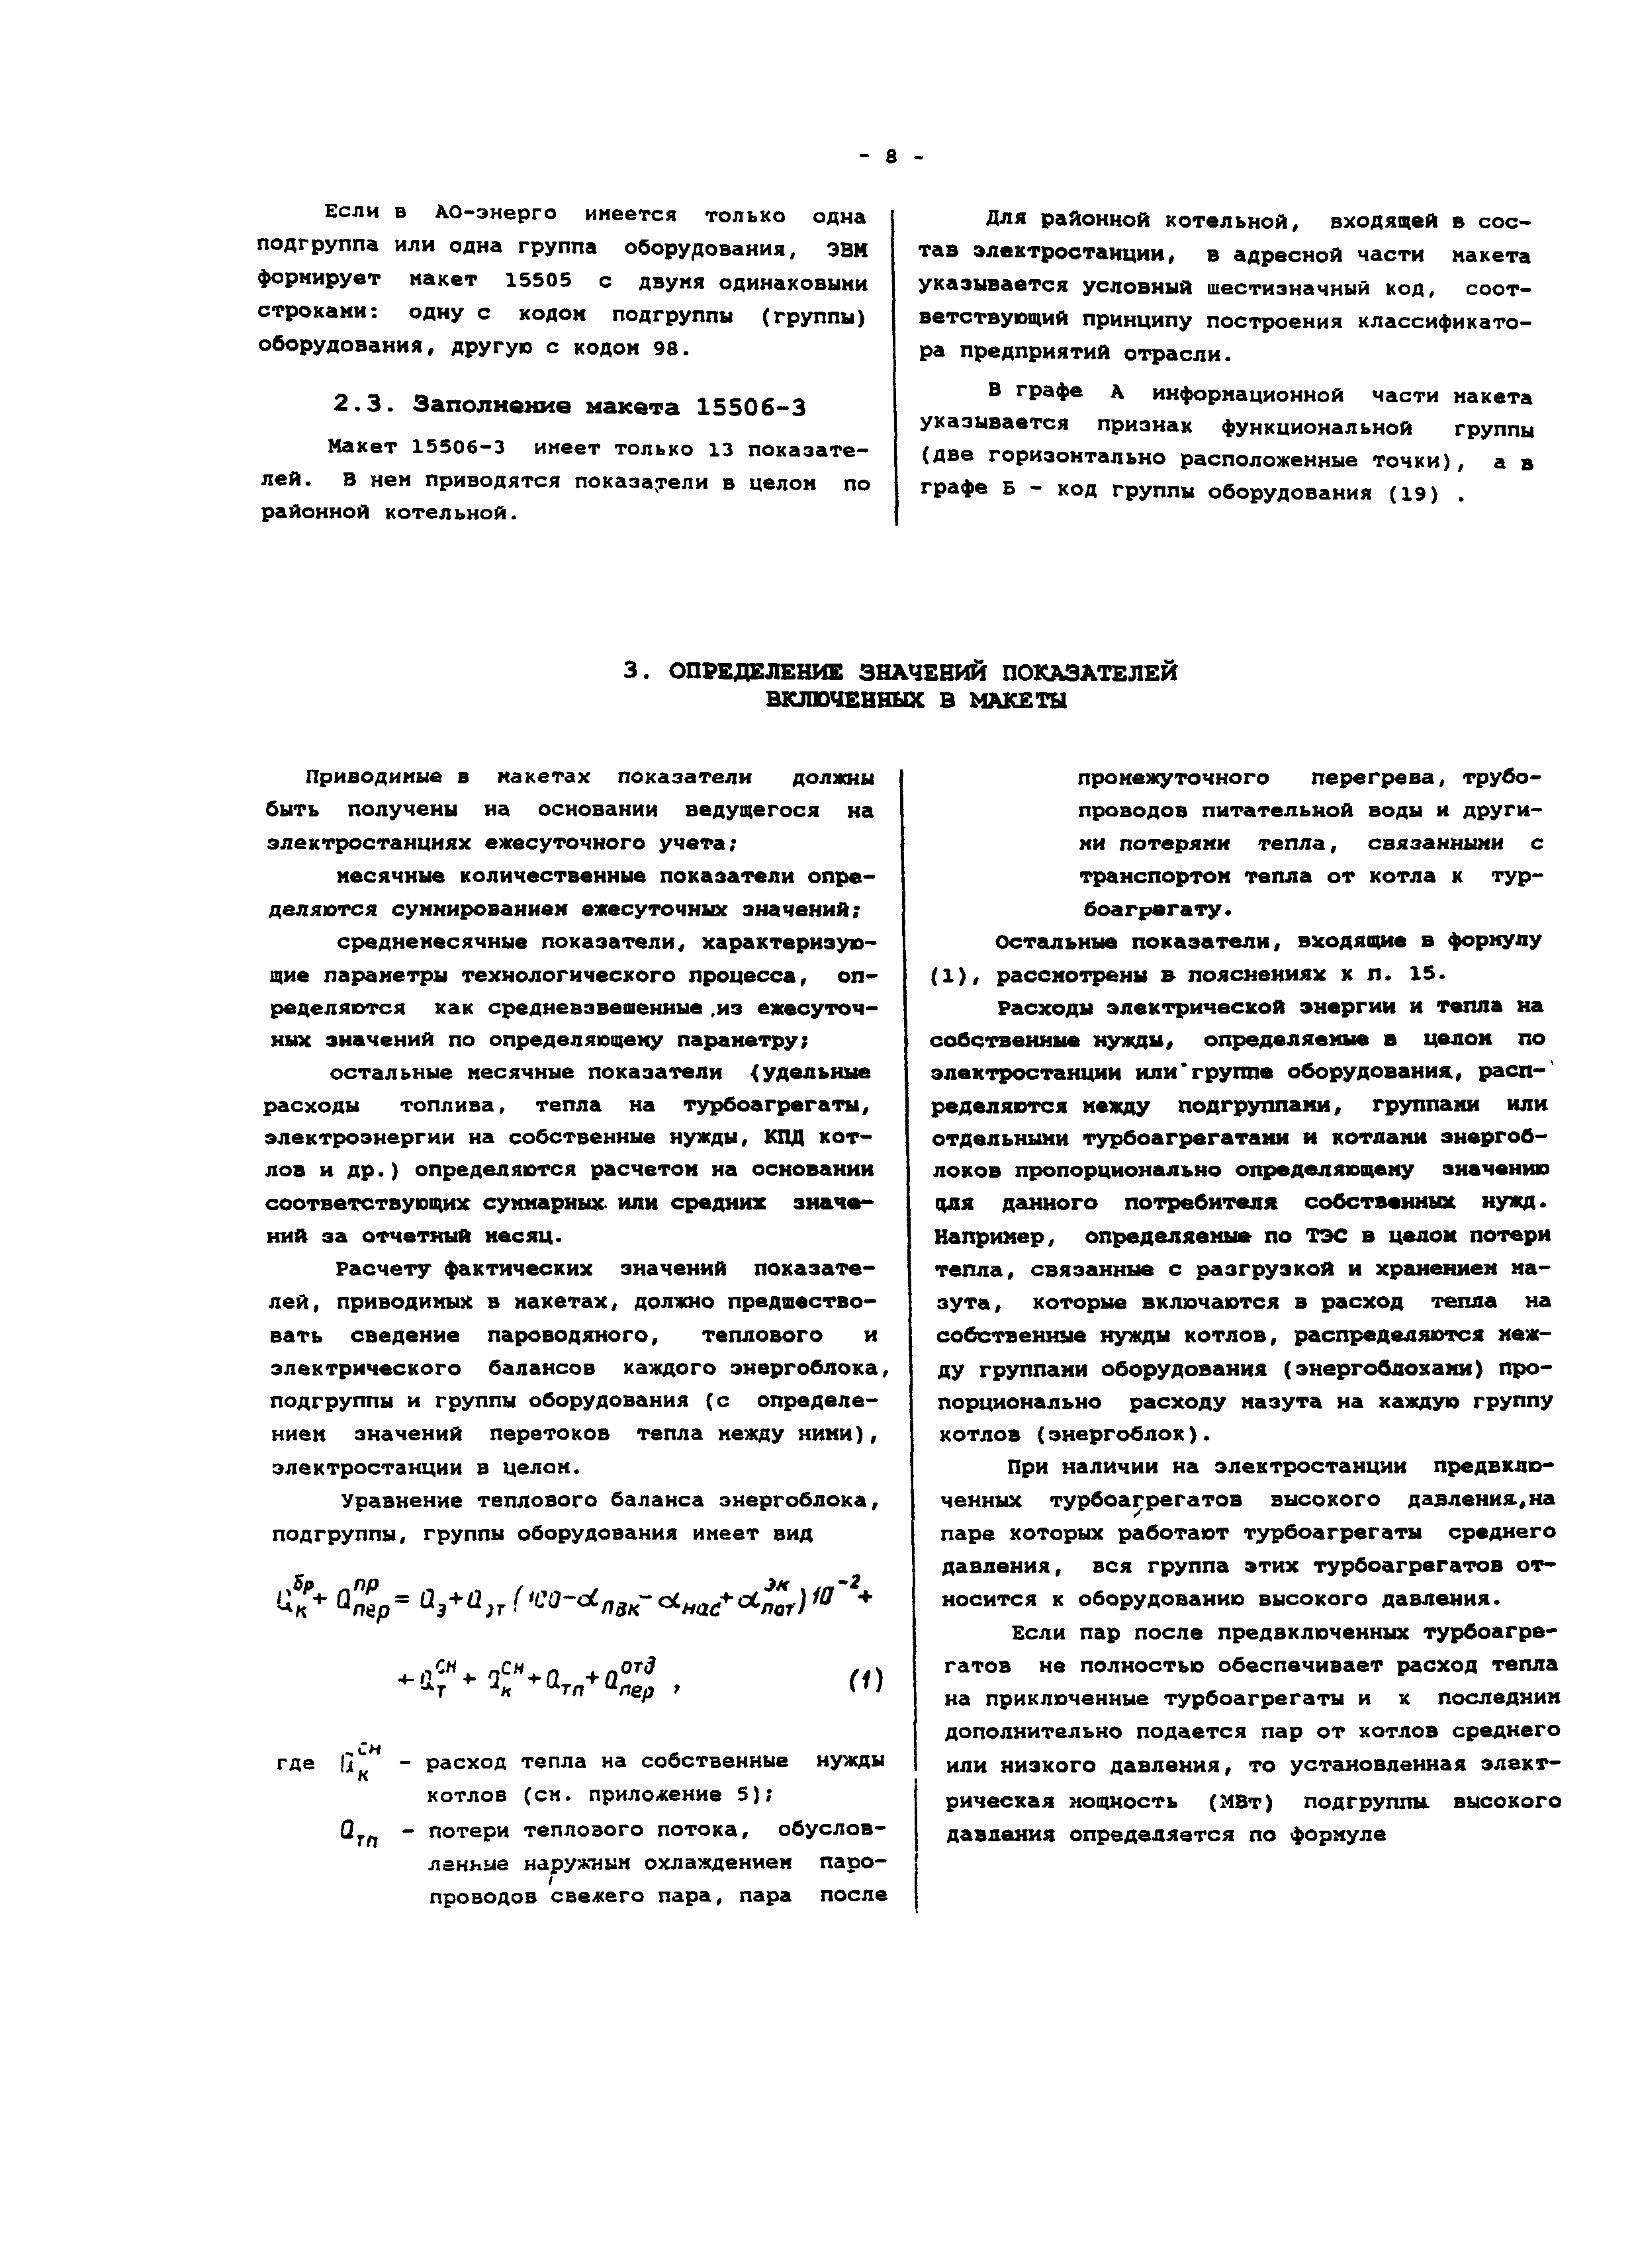  Методическое указание по теме Определение состава продуктов детонации и теплового эффекта взрыва по полуэмпирическому методу Г.А. Авакяна